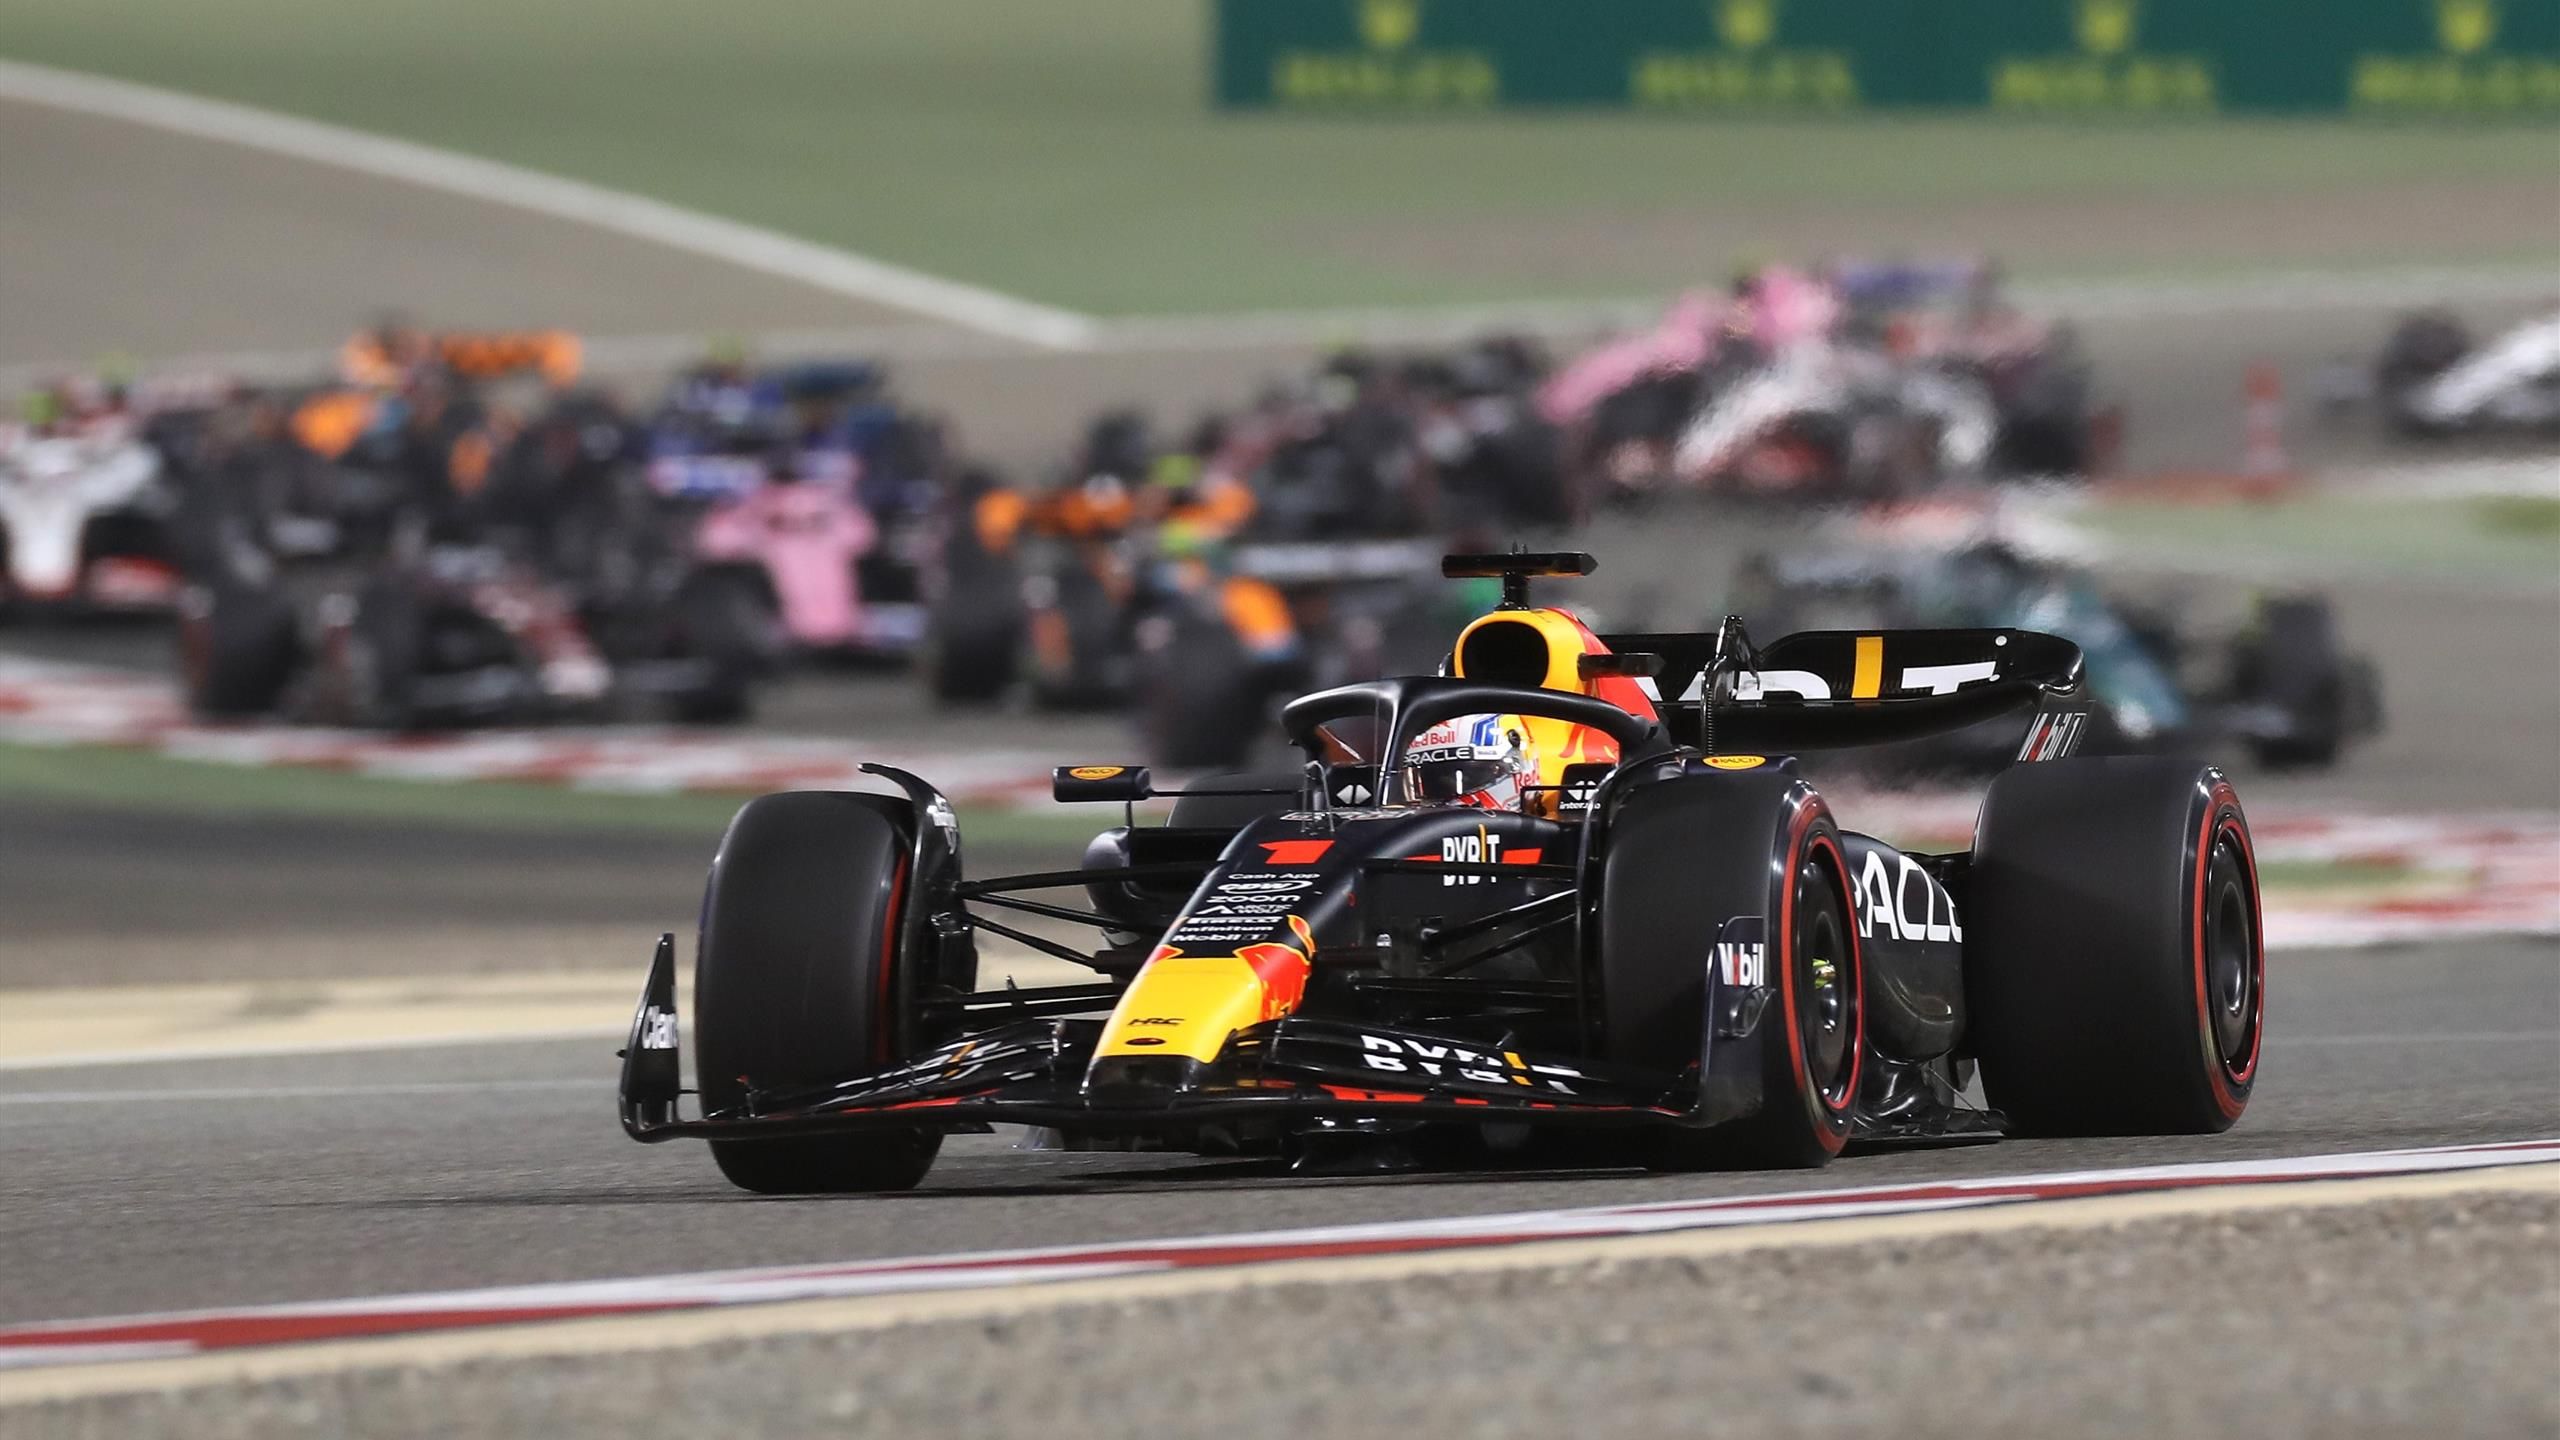 F1 | Verstappen wint eerste Grand Prix van 2023 met overmacht - Alonso maakt indruk plek drie - Eurosport